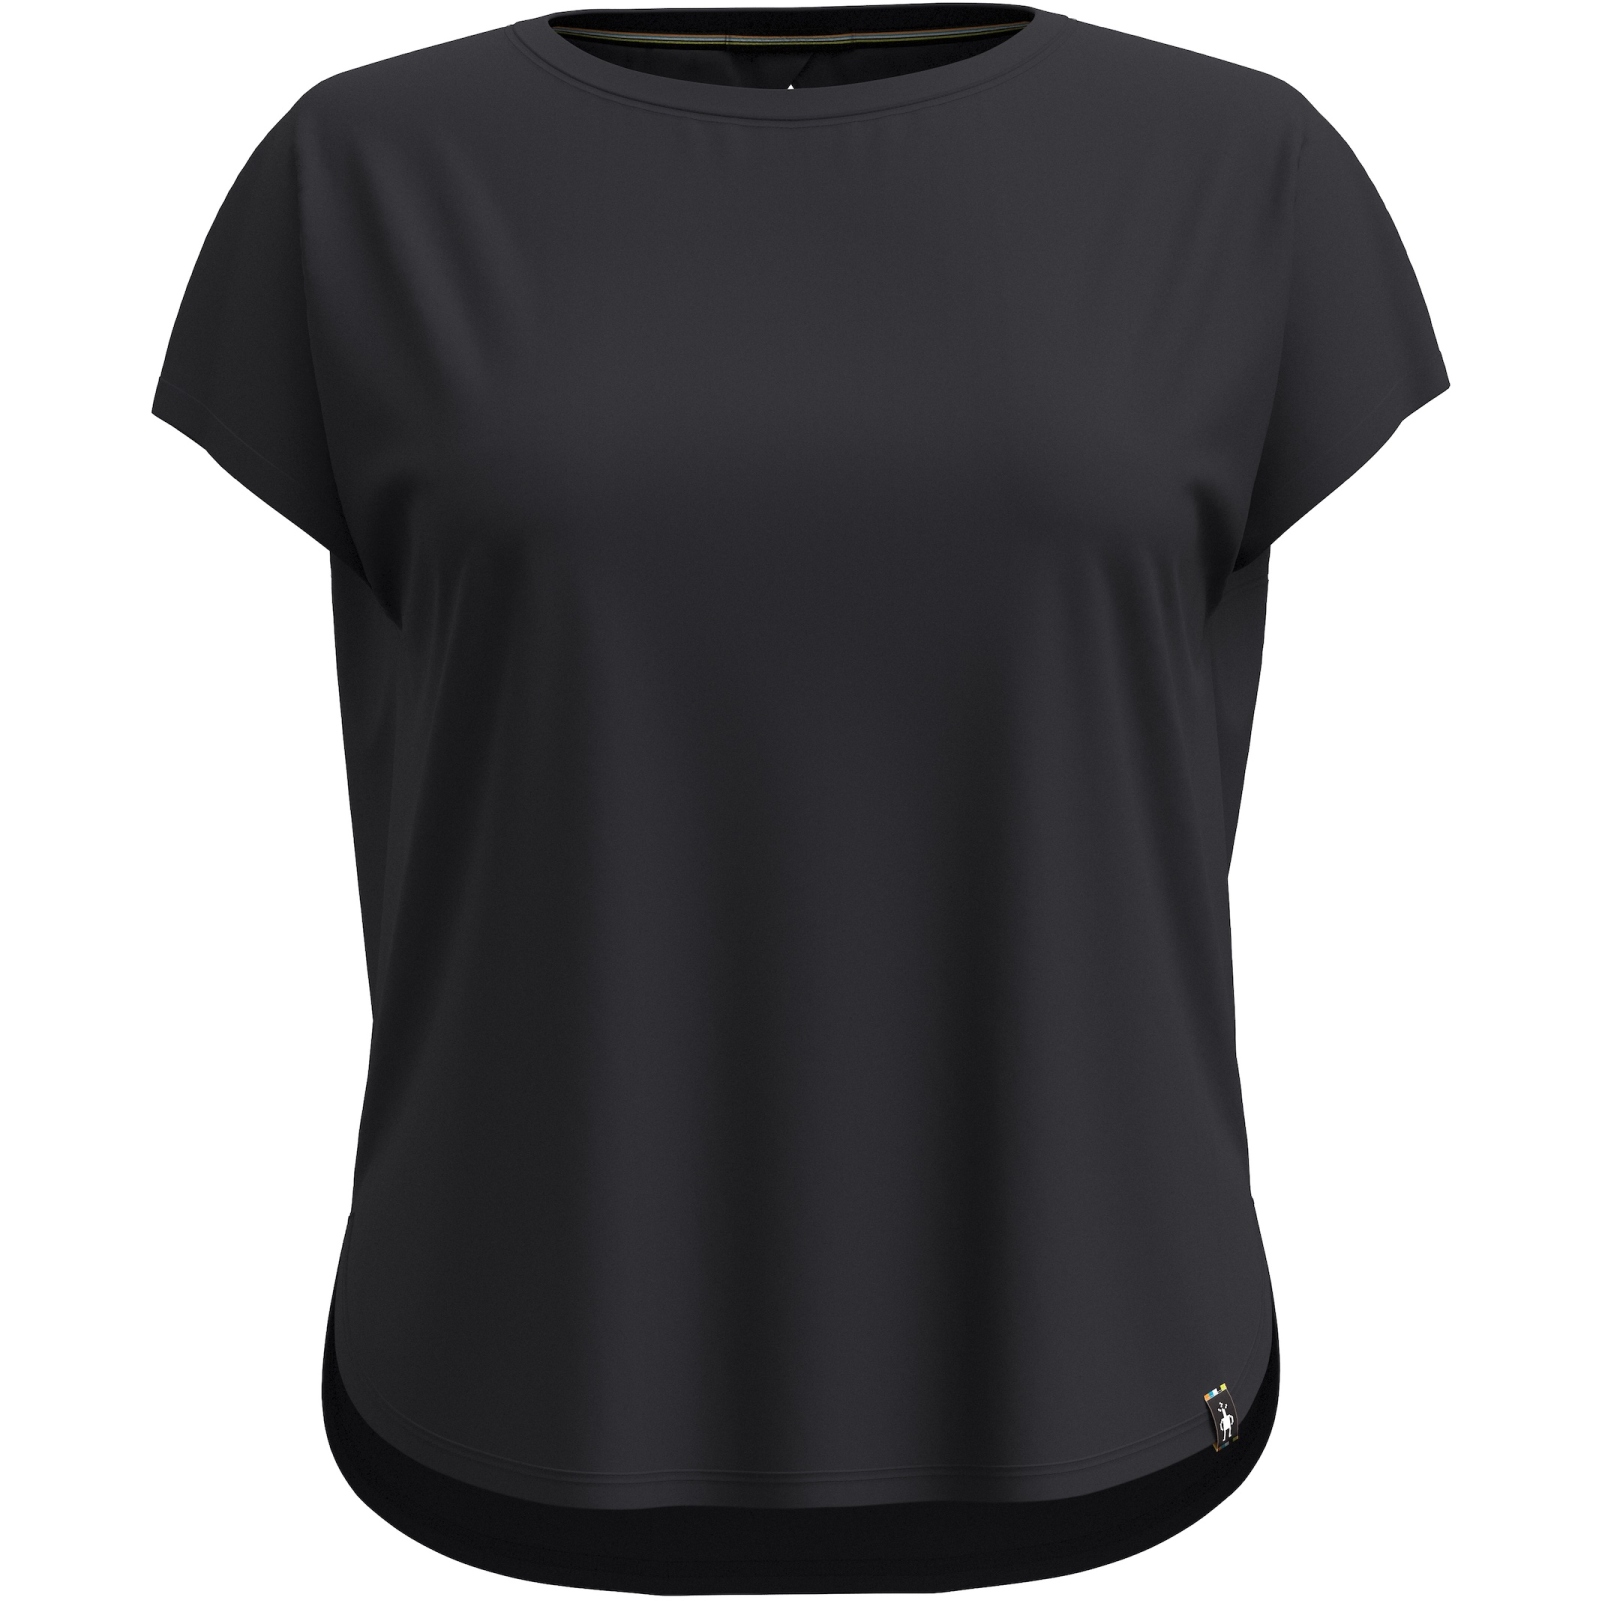 Produktbild von SmartWool Swing T-Shirt Damen - 001 schwarz